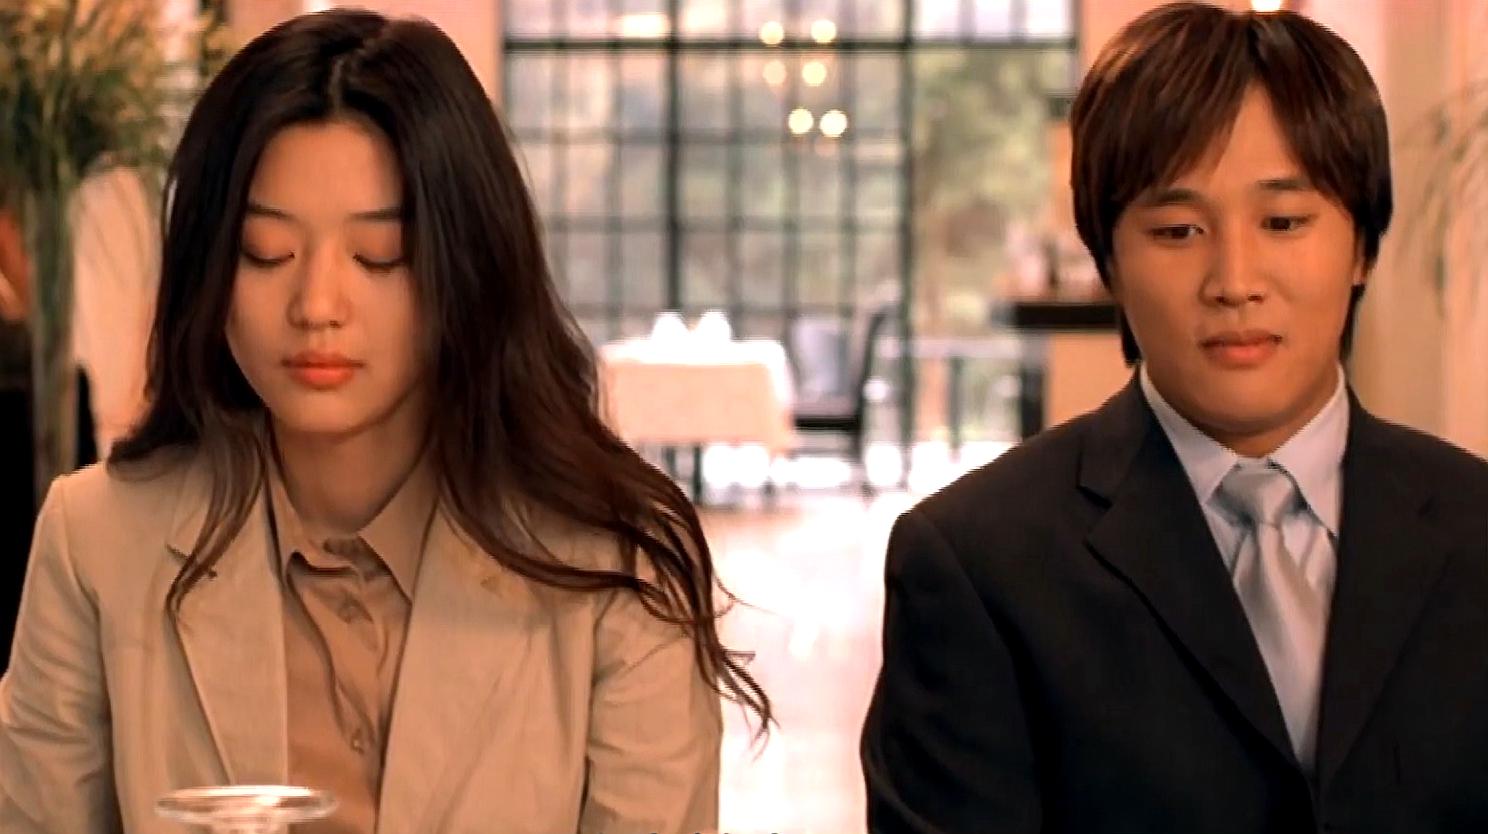 盘点近20年几部韩国爱情电影,让你感受初恋的感觉,甜度爆表!5个视频